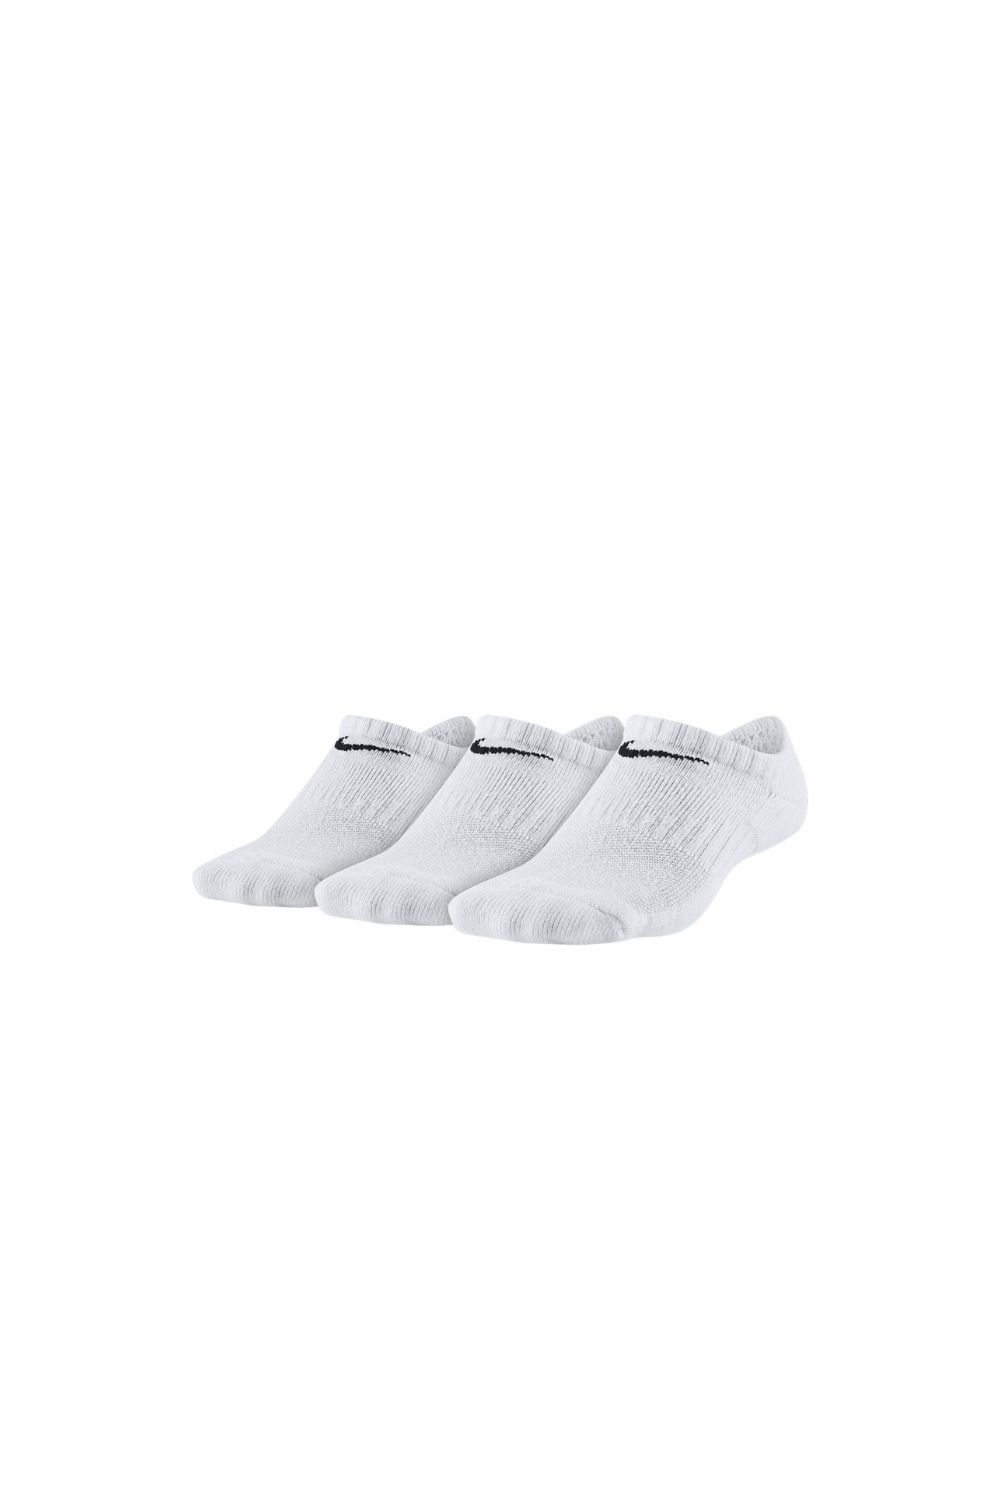 NIKE – Παιδικές κάλτσες σετ των 3 NIKE EVERYDAY CUSH λευκές 1599302.1-9171